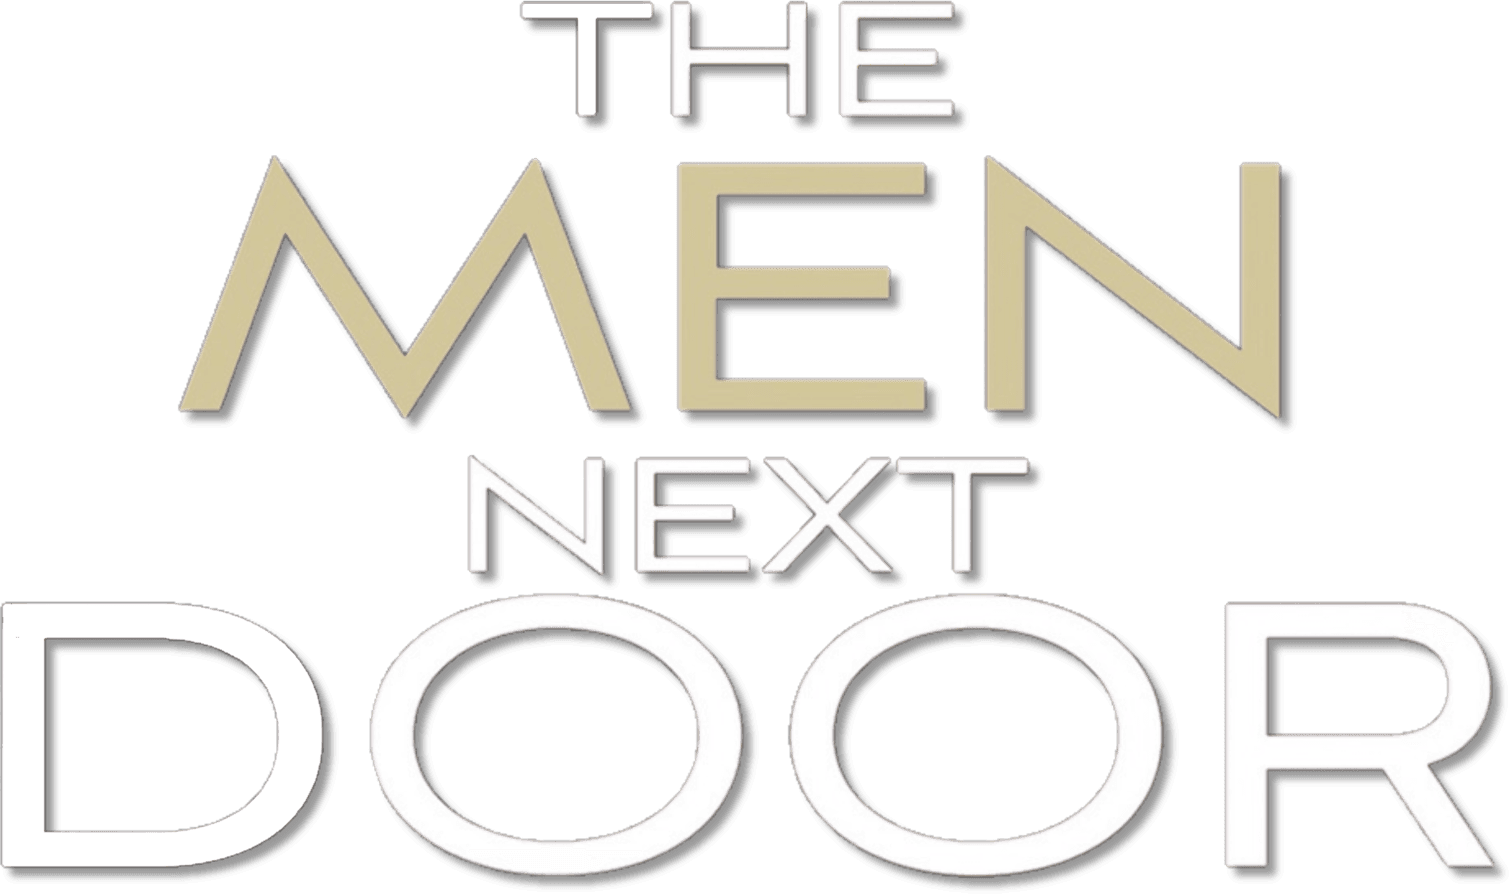 The Men Next Door logo